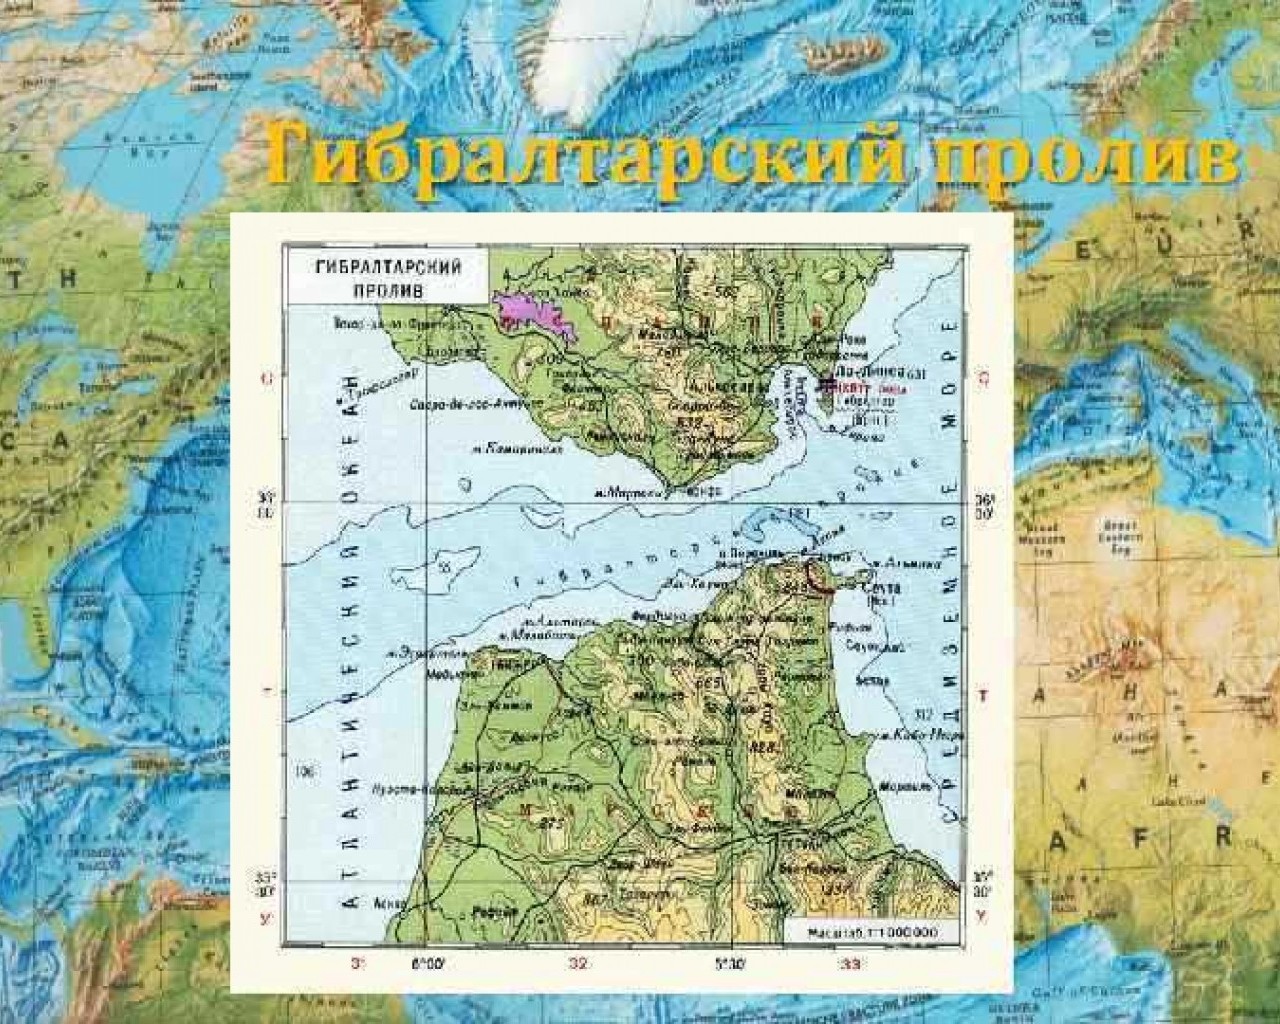 Гибралтарский пролив на карте - местоположение и особенности важной морской дороги